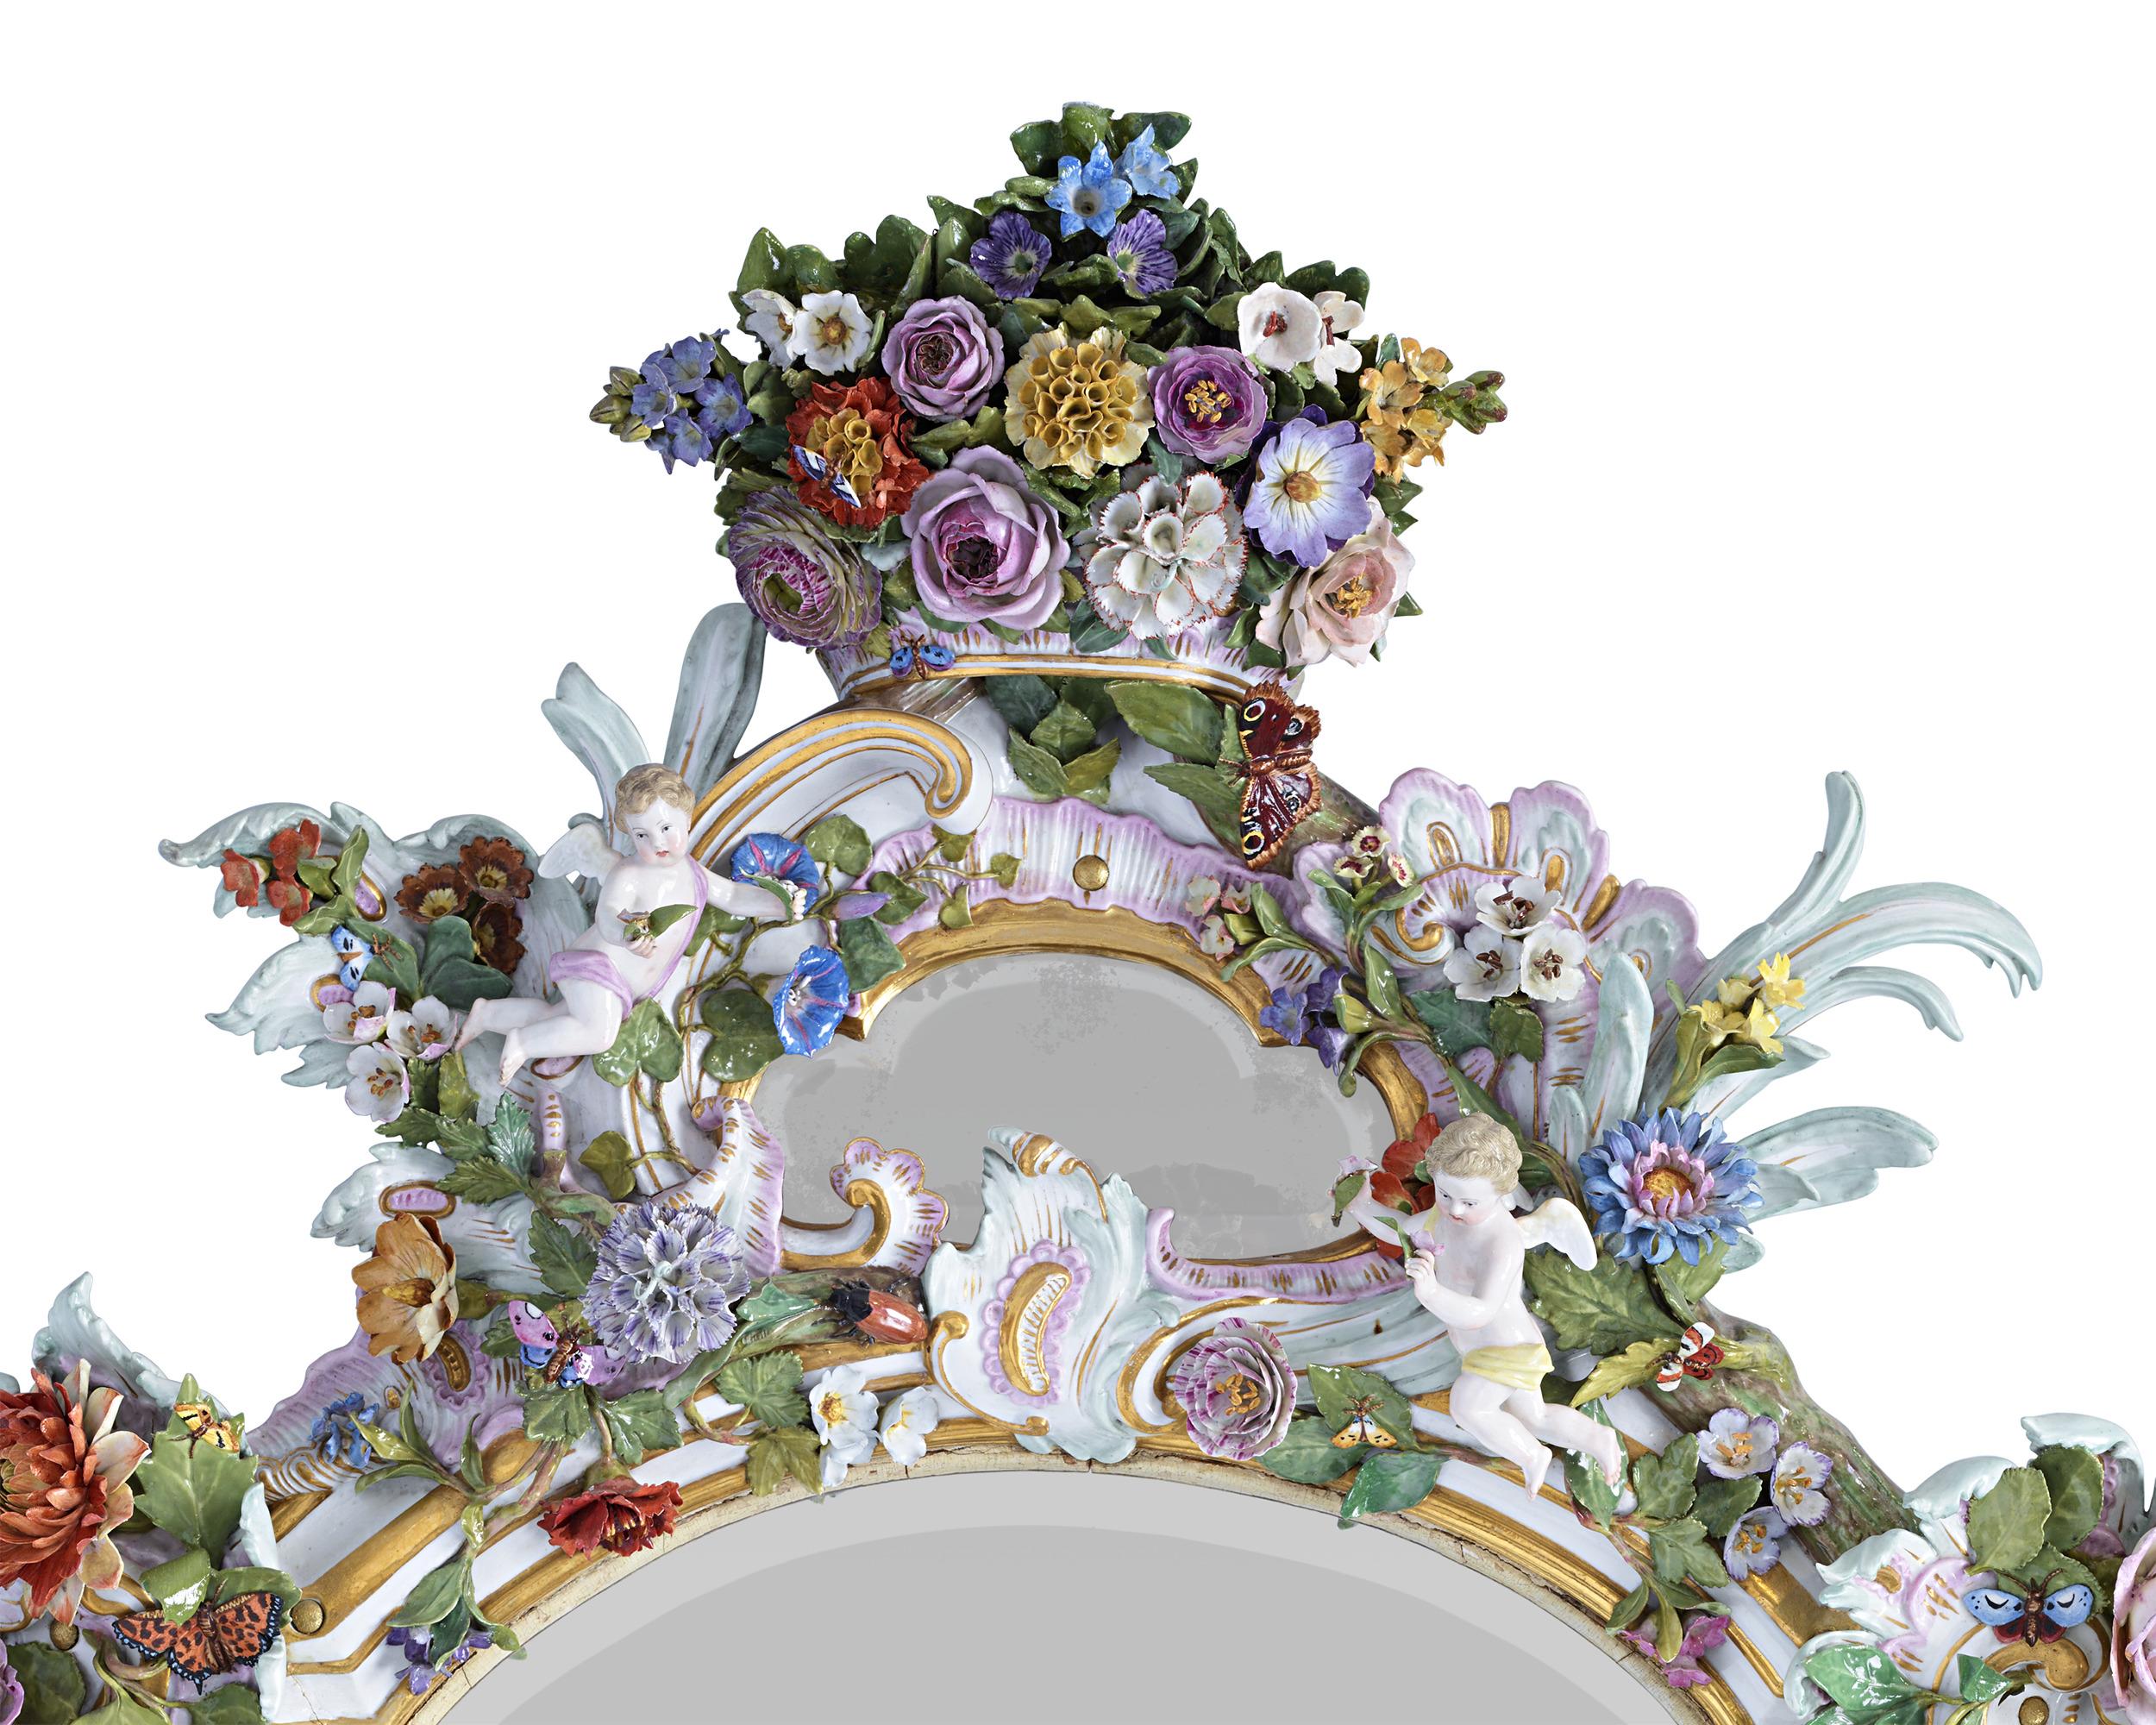 La porcelaine somptueuse de Meissen sert de cadre extraordinaire à ce miroir. Exquisément peint à la main en polychromie avec des accents dorés, le cadre généreux est orné de toutes sortes de décorations rococo classiques, y compris de luxuriants